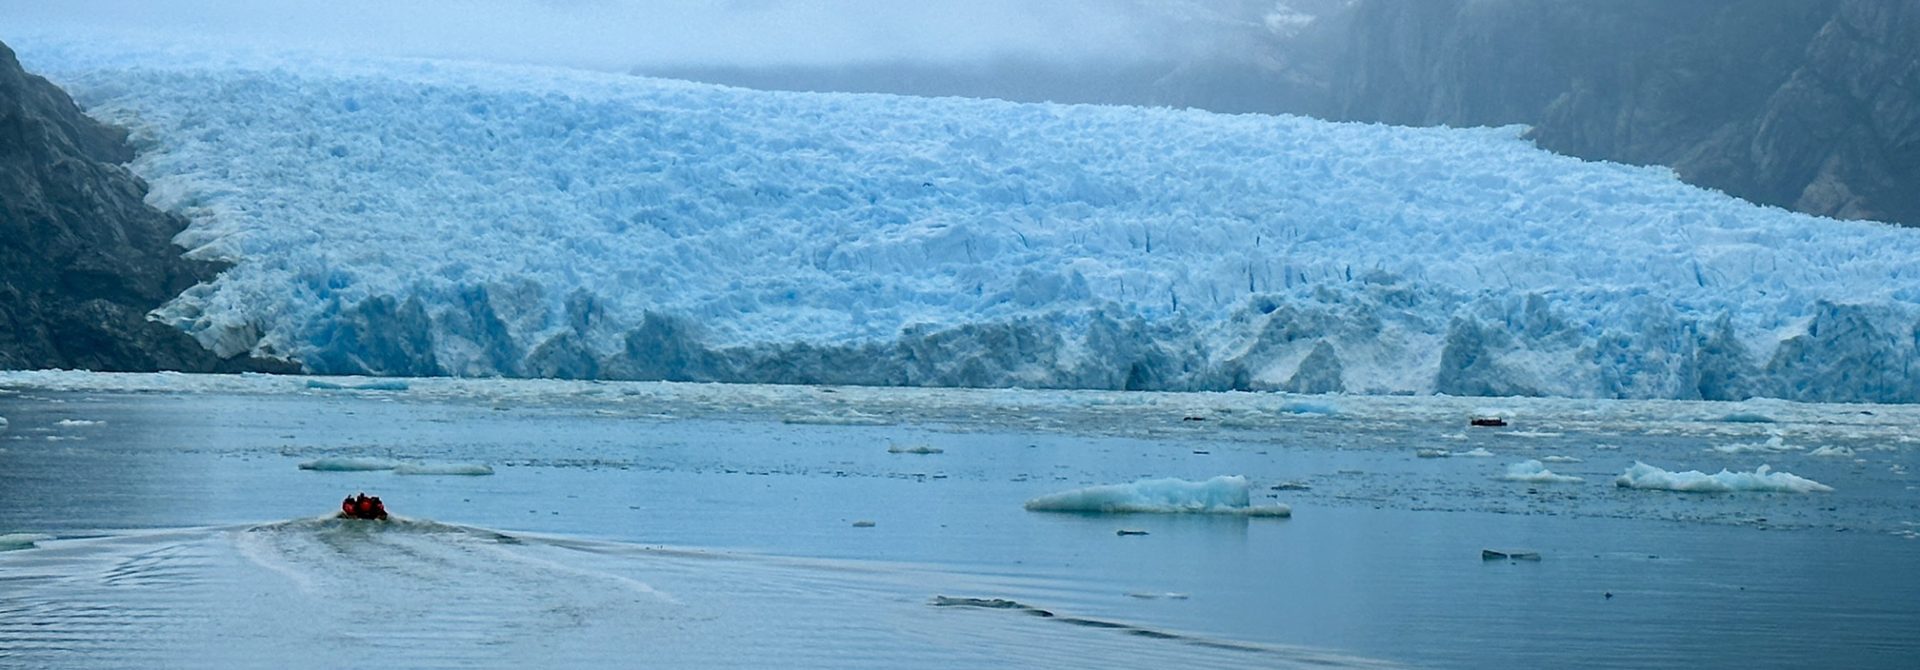 Patagônia chilena: saiba como é a navegação na geleira San Rafael